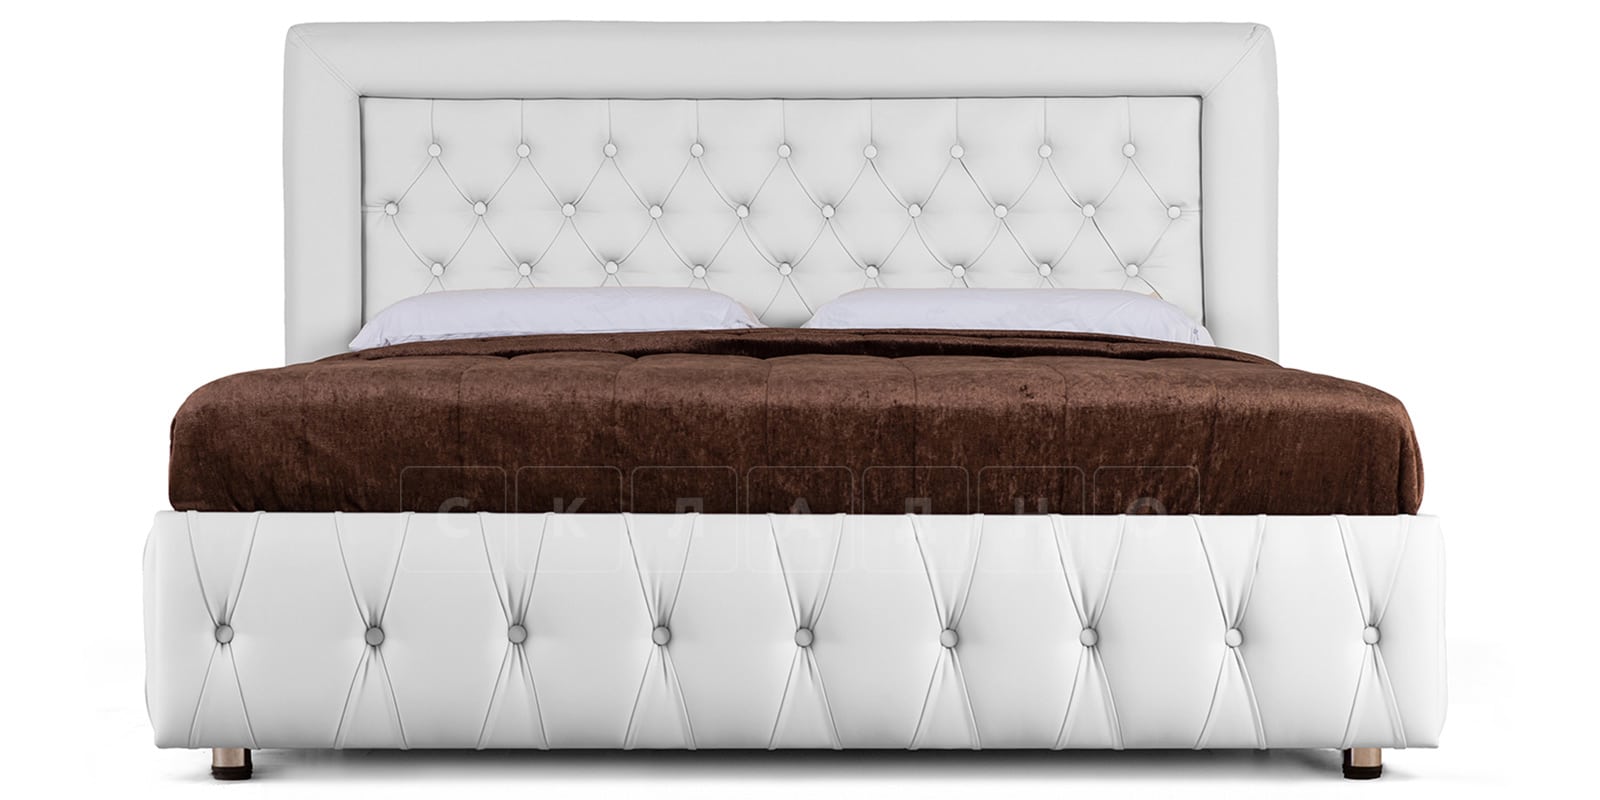 Мягкая кровать Малибу 160 см экокожа белого цвета вариант 7-2 фото 2 | интернет-магазин Складно